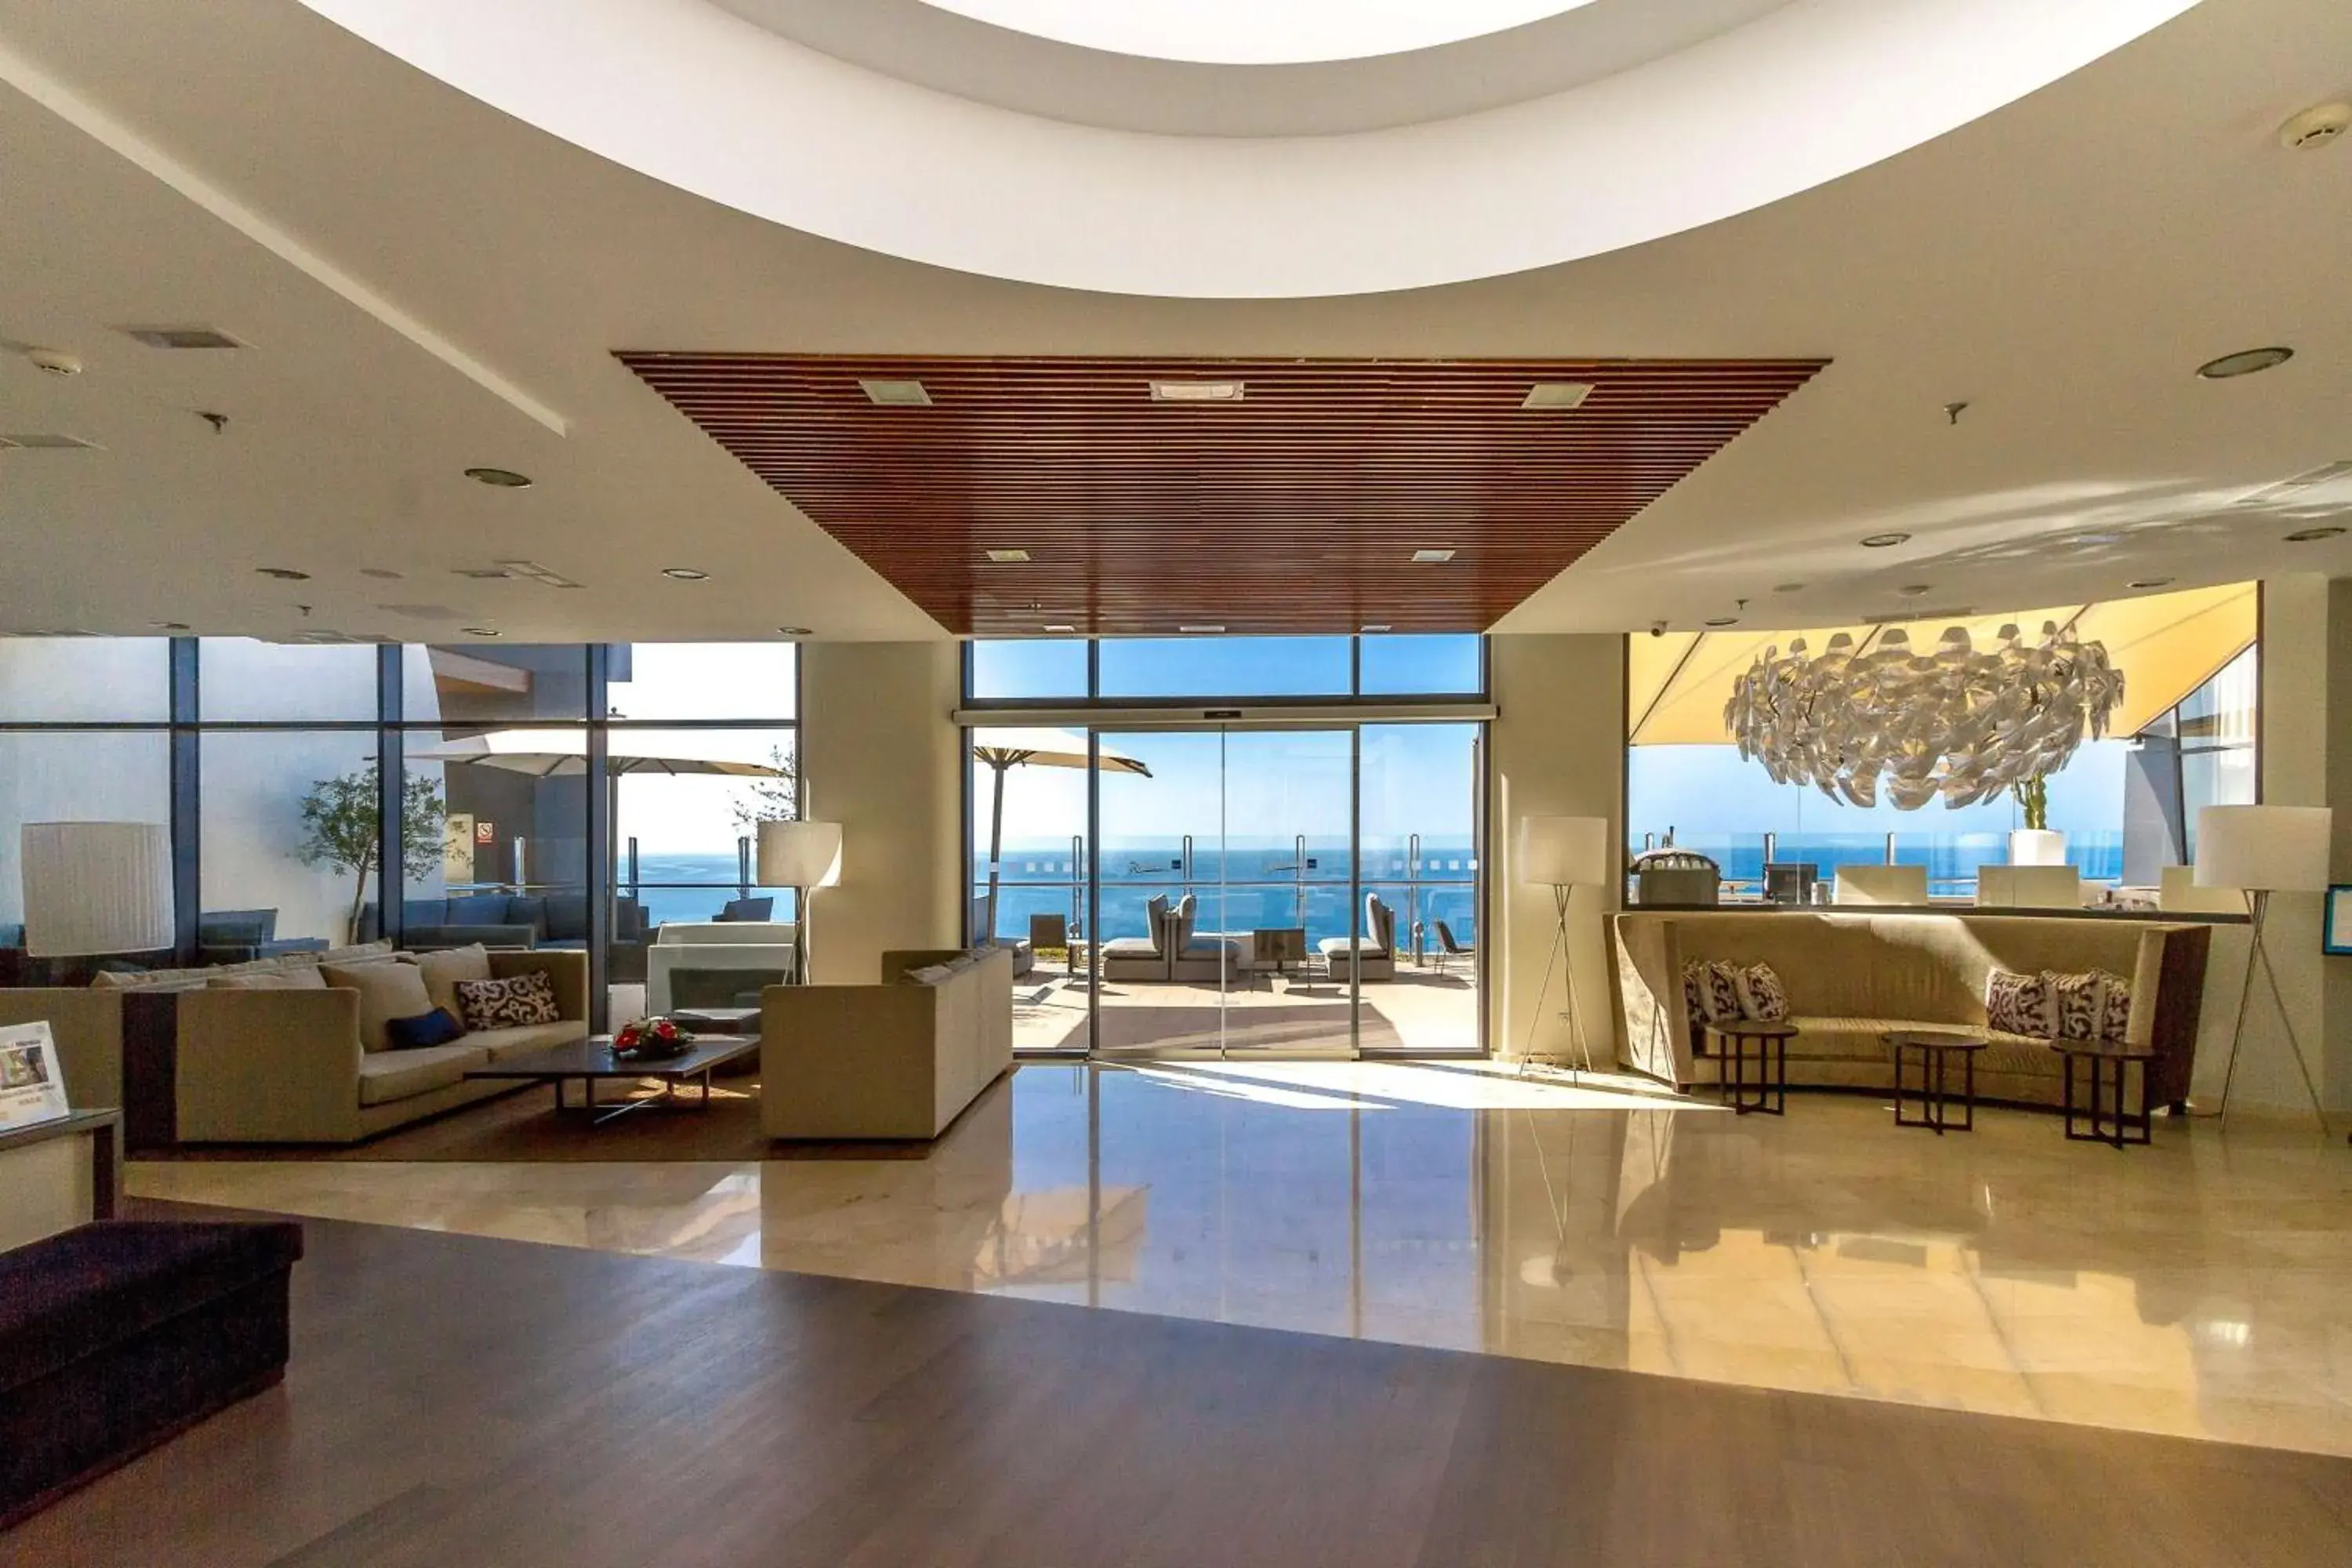 Lobby or reception in Radisson Blu Resort Gran Canaria